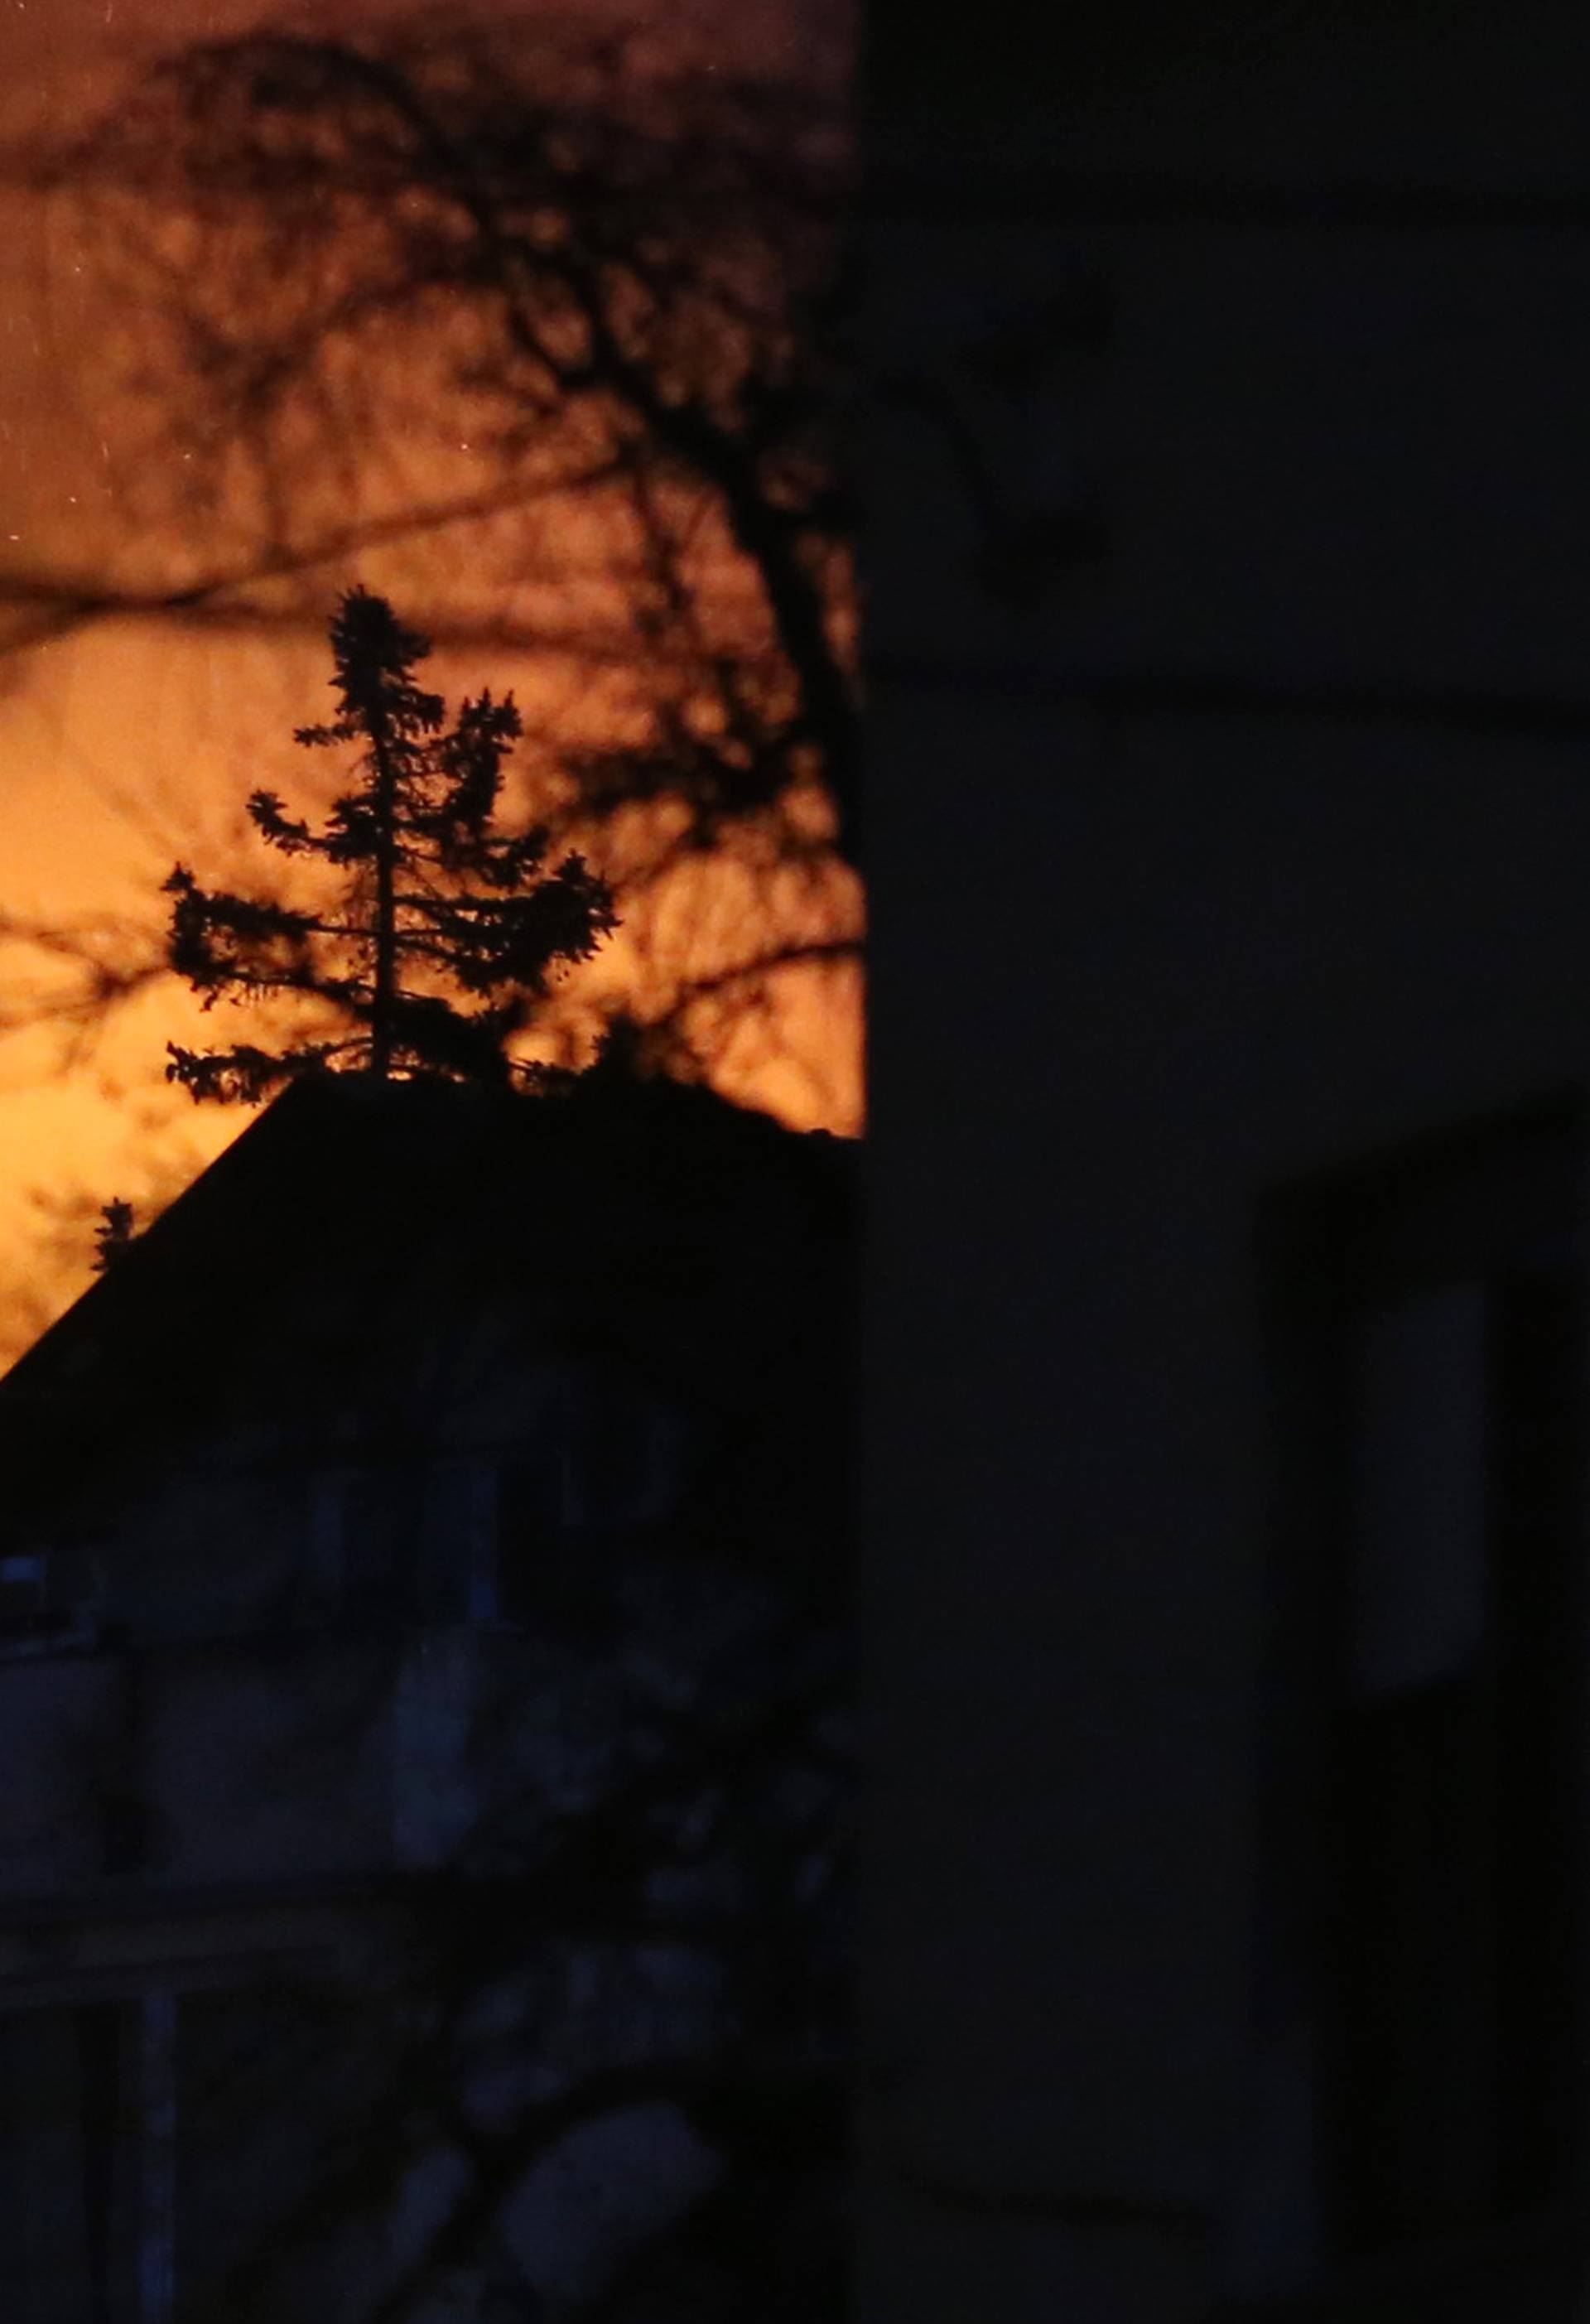 Brzo reagirali: Planula kuća u Zagrebu, nitko nije ozlijeđen